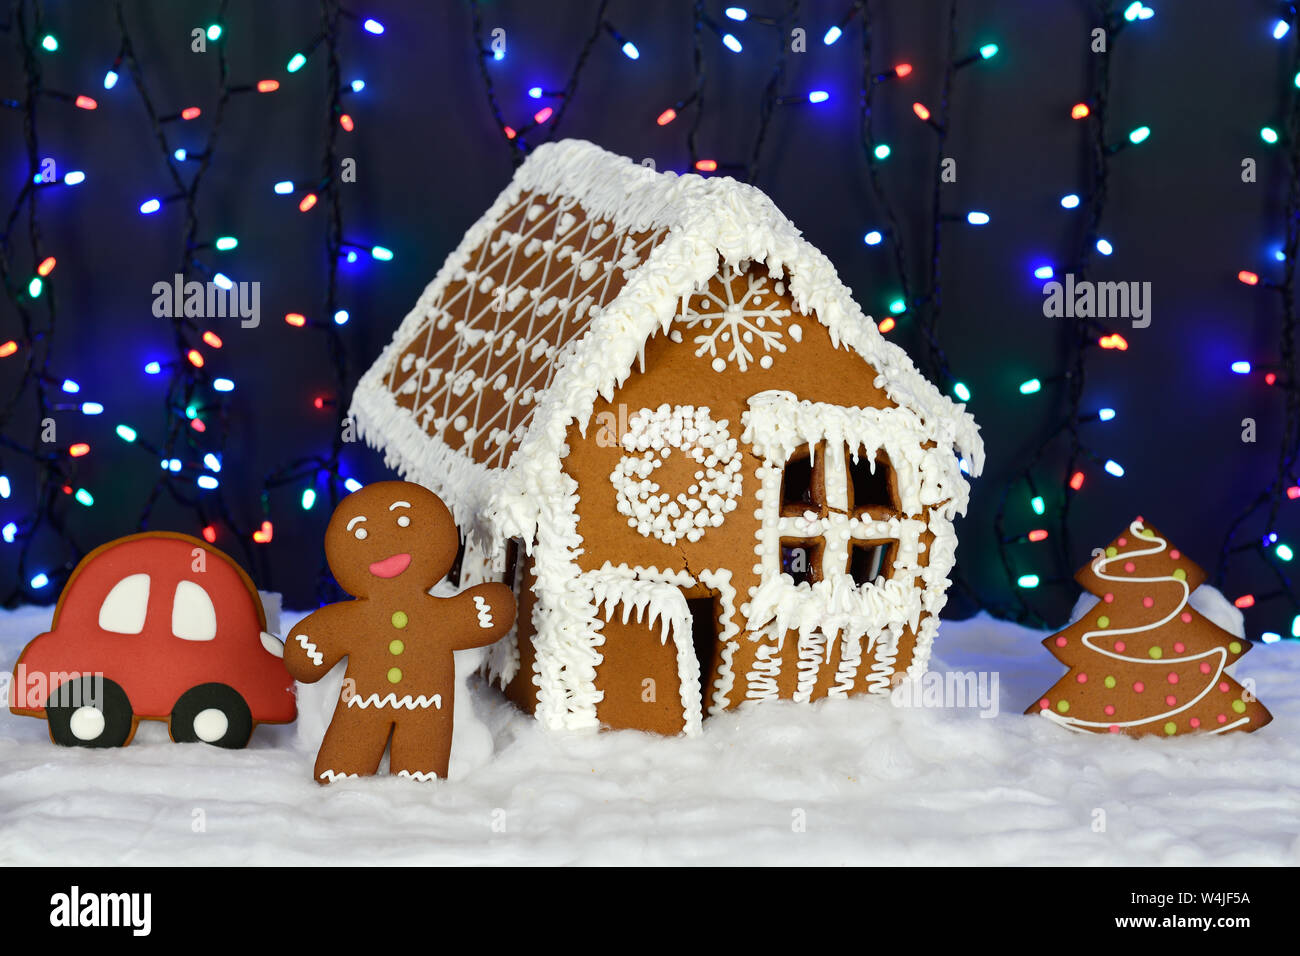 I fatti a mano mangiabile gingerbread house piccolo uomo, Anno nuovo albero, Auto, neve decorazione, ghirlanda di illuminazione di sfondo Foto Stock